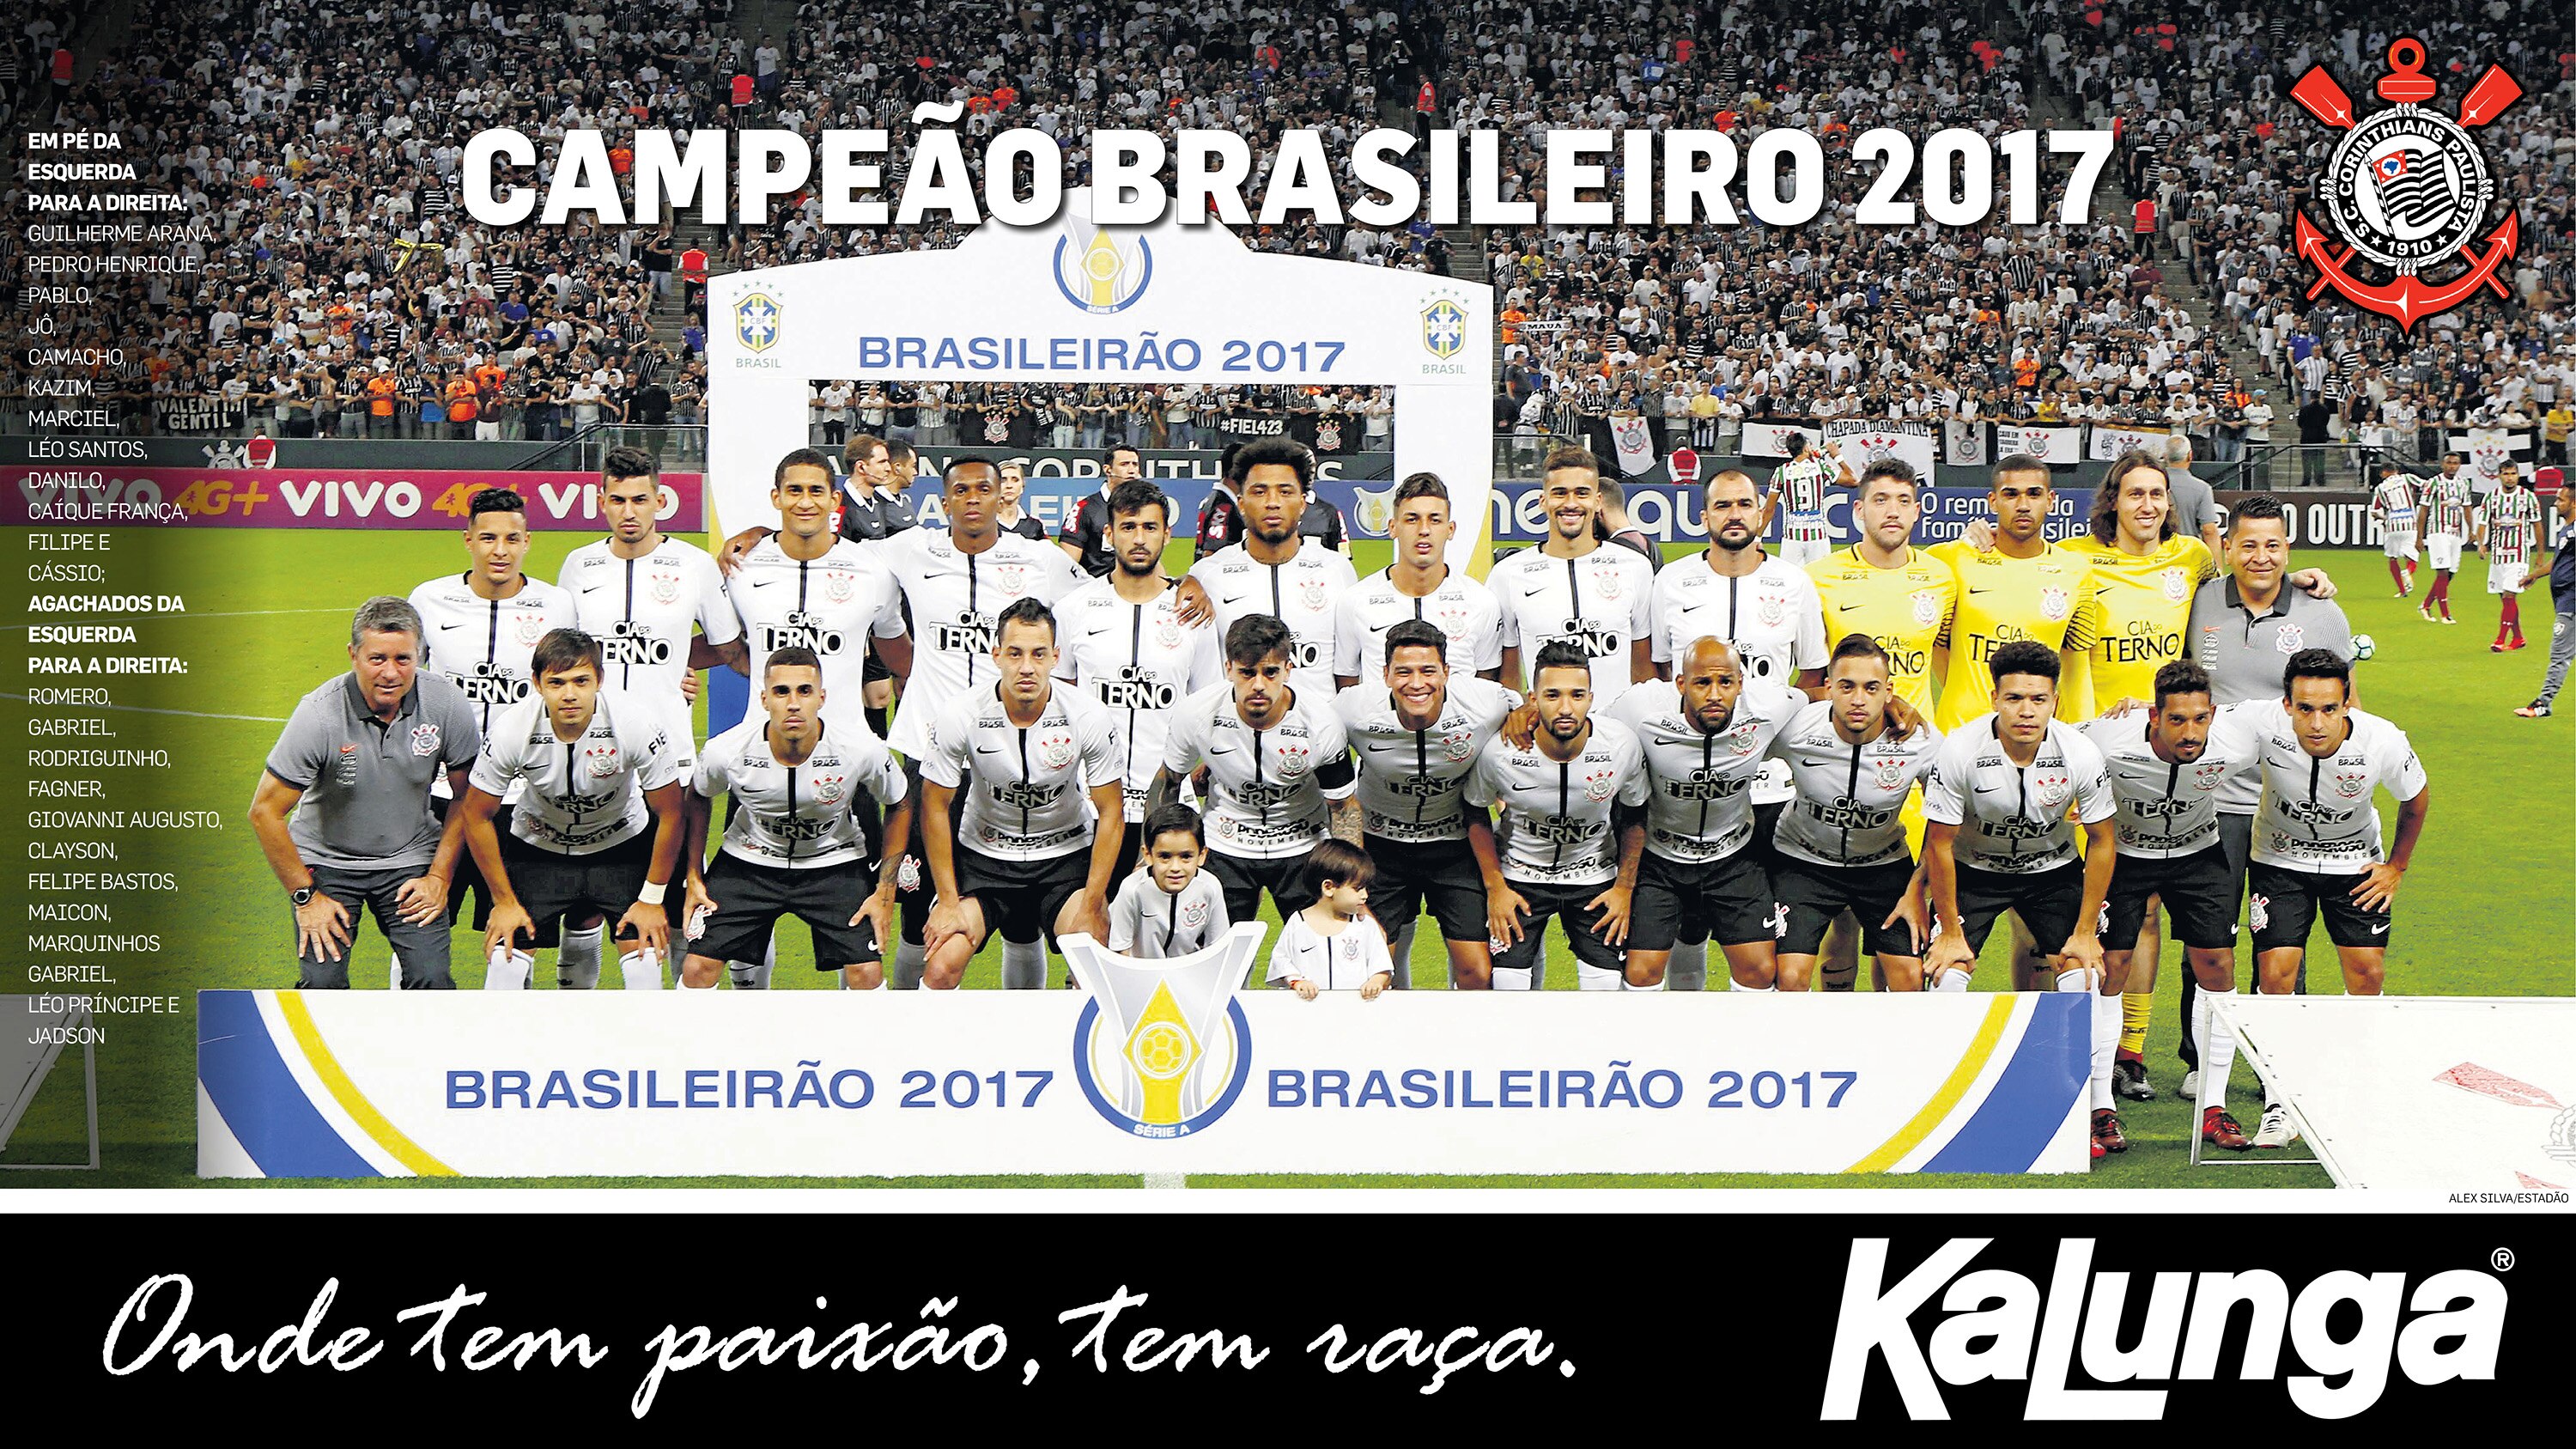 Resultado de imagem para corinthians campeão brasileiro 2017